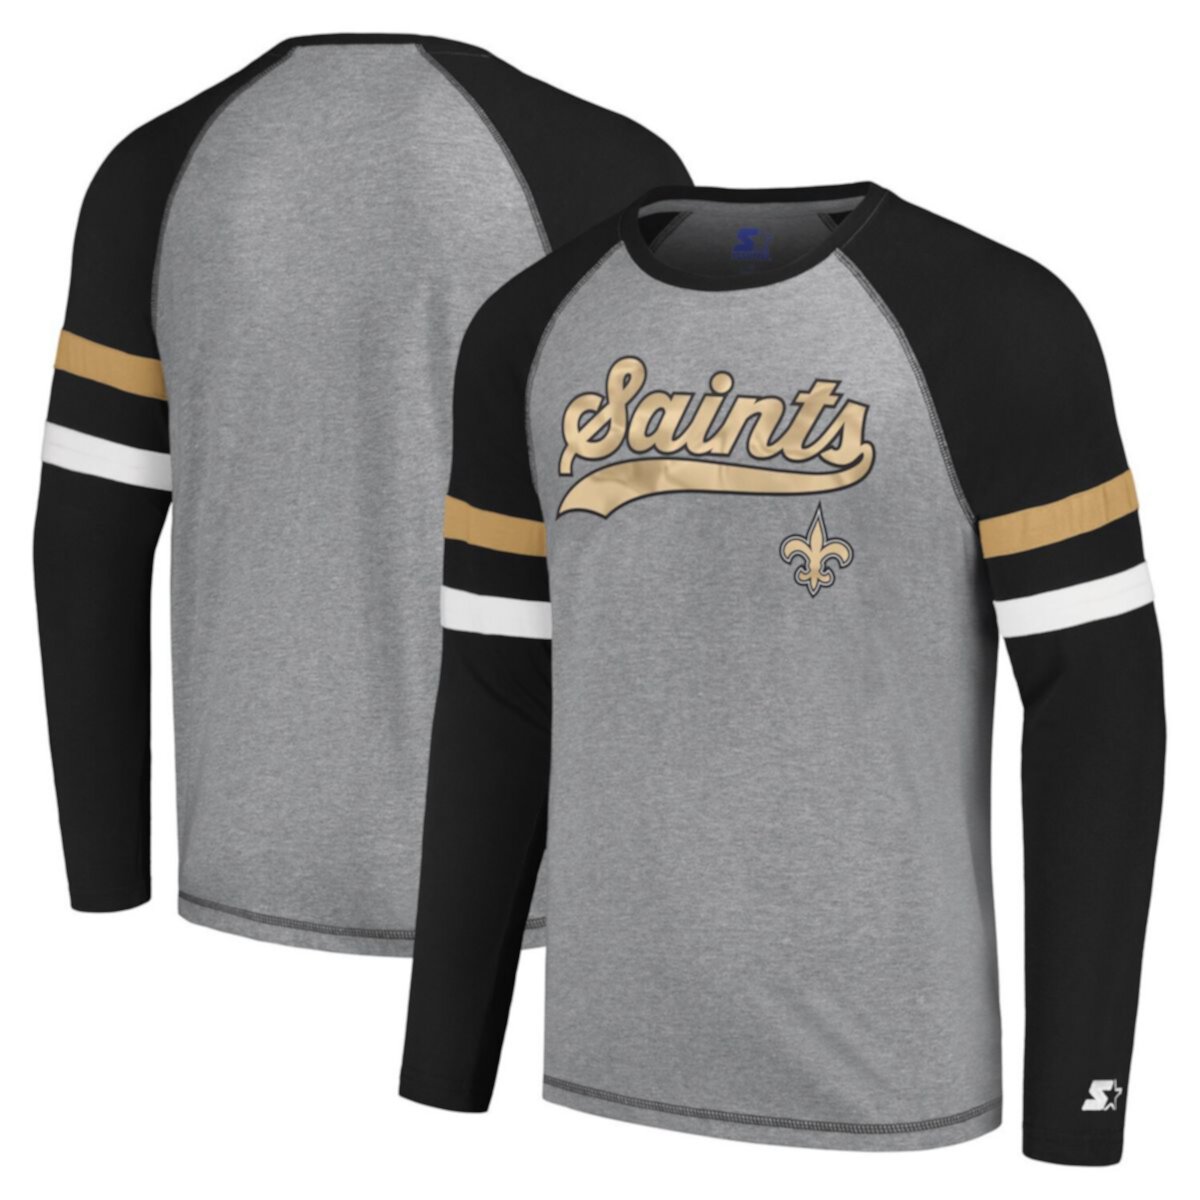 Мужская стартовая серая/черная футболка New Orleans Saints Kickoff реглан с длинными рукавами Starter